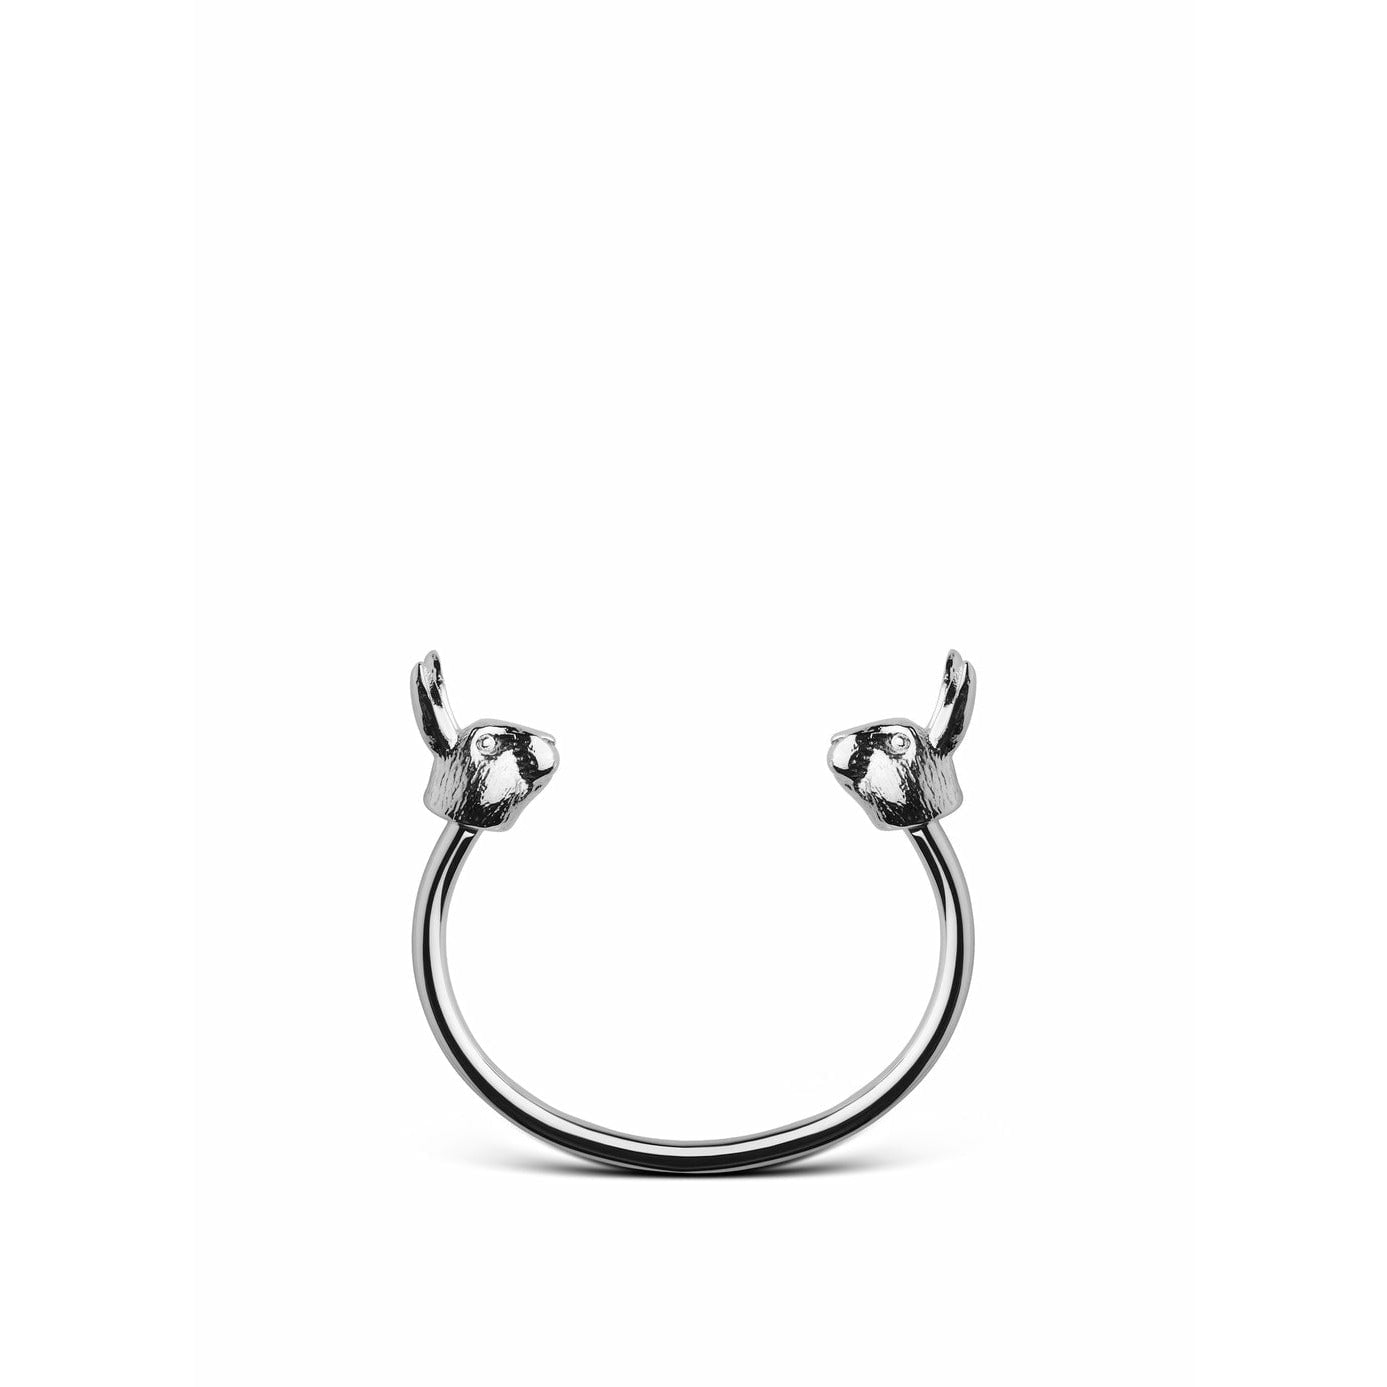 Skultuna Le bracelet de lapin de la faune nordique grand acier poli, Ø18,5 cm